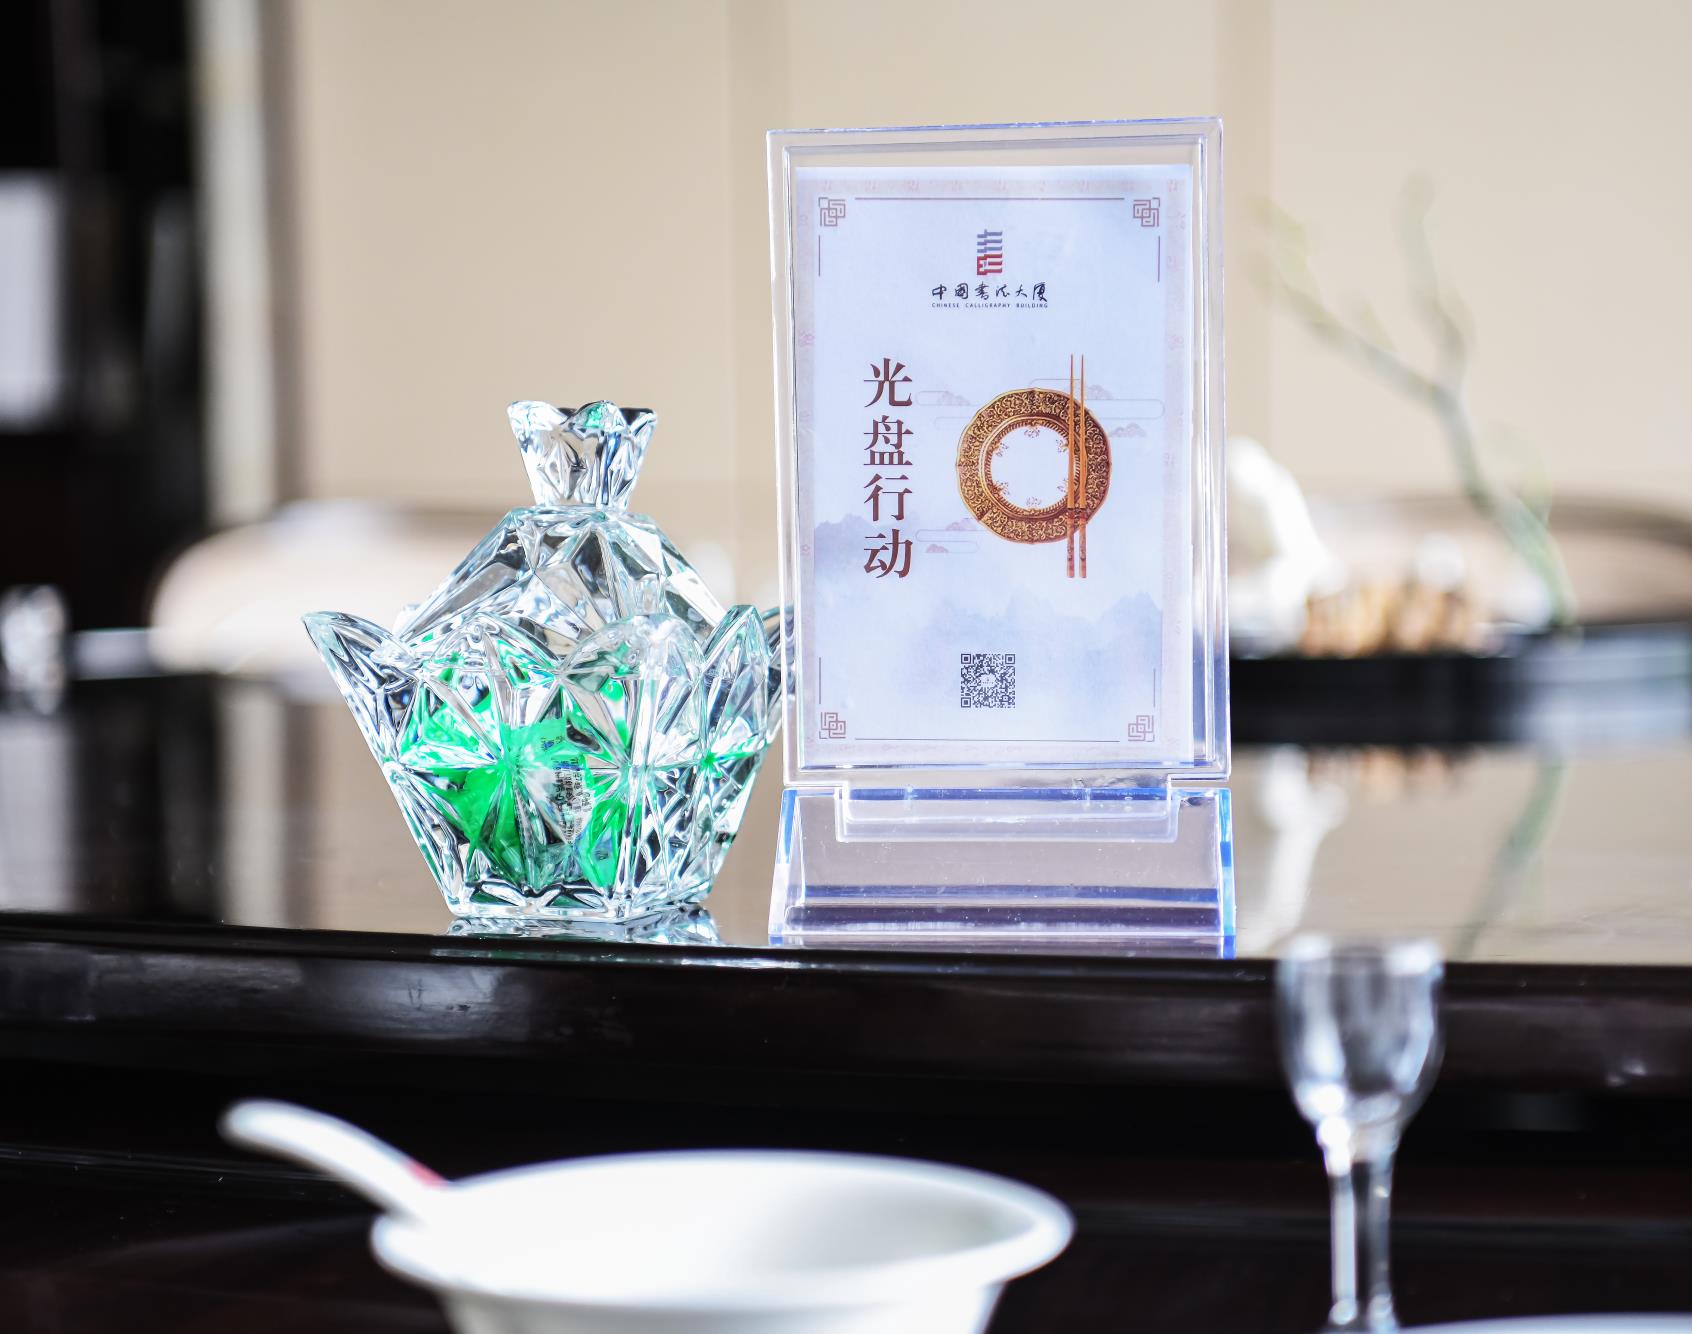 “小份·适价”服务深受消费者欢迎中国书法大厦推崇科学健康的饮食风尚